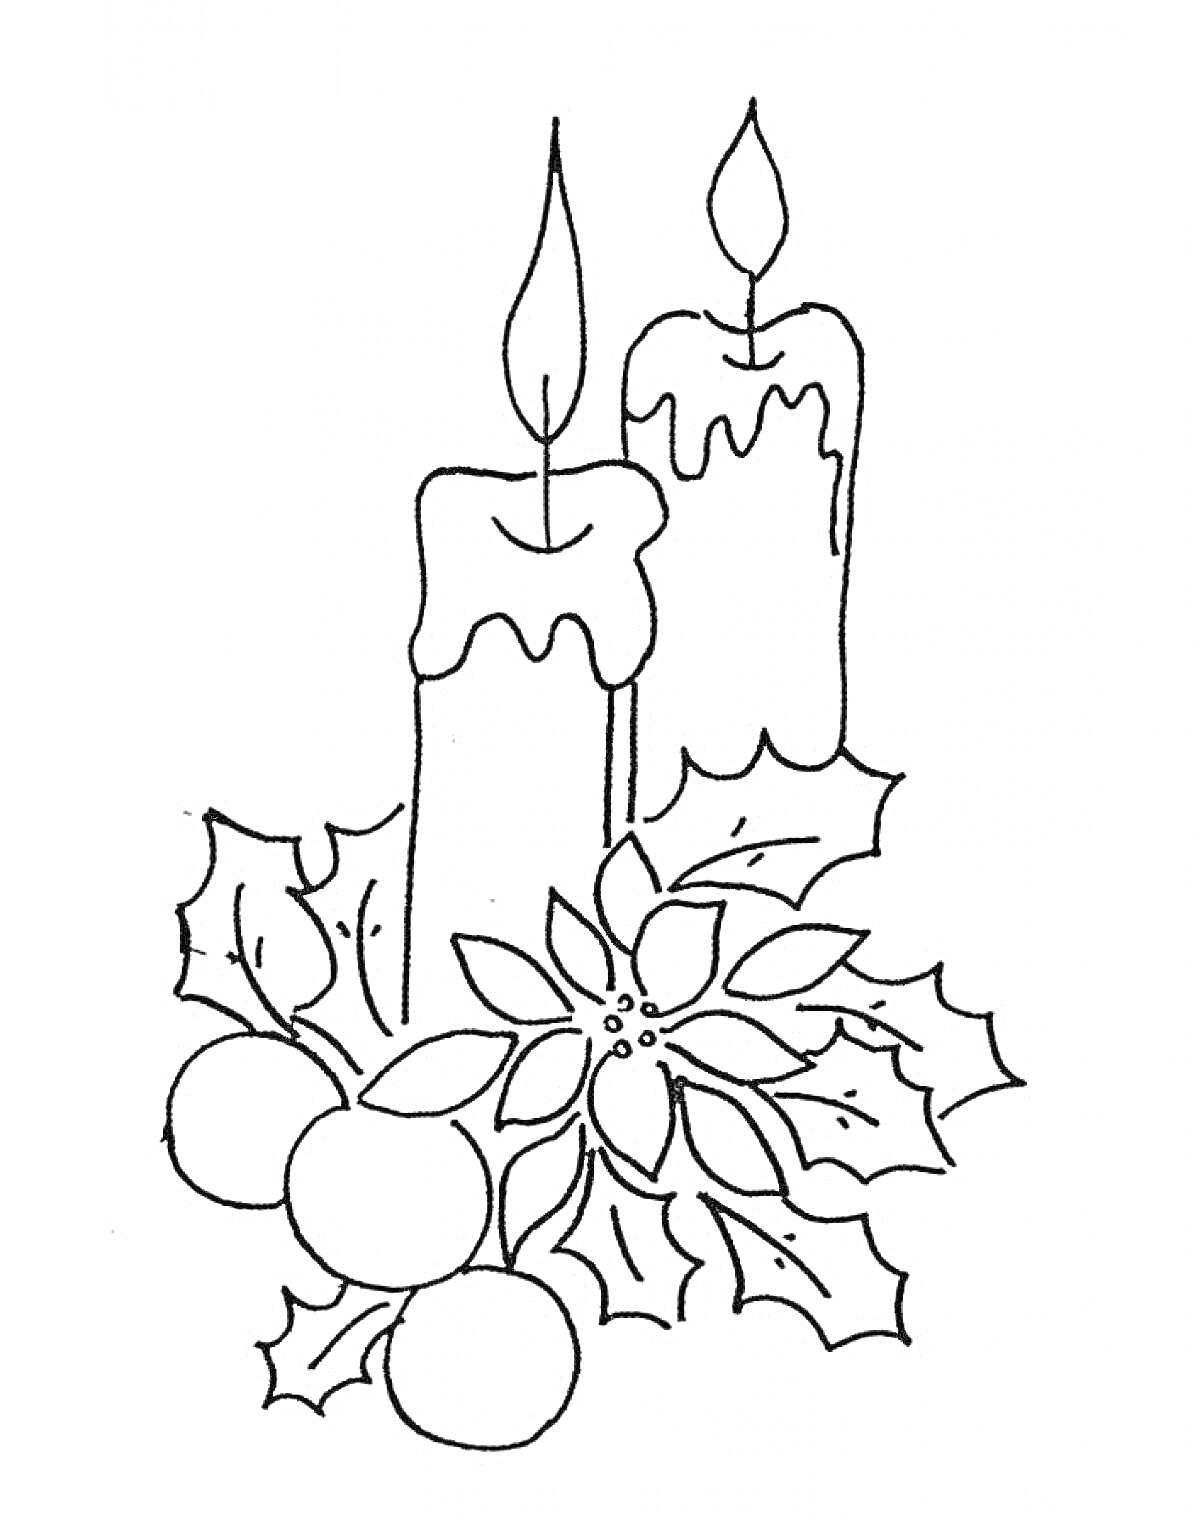 Раскраска Две свечи с горящими огнями, окруженные рождественскими украшениями, включающими листья и ягоды остролиста, а также цветок пуансеттии.